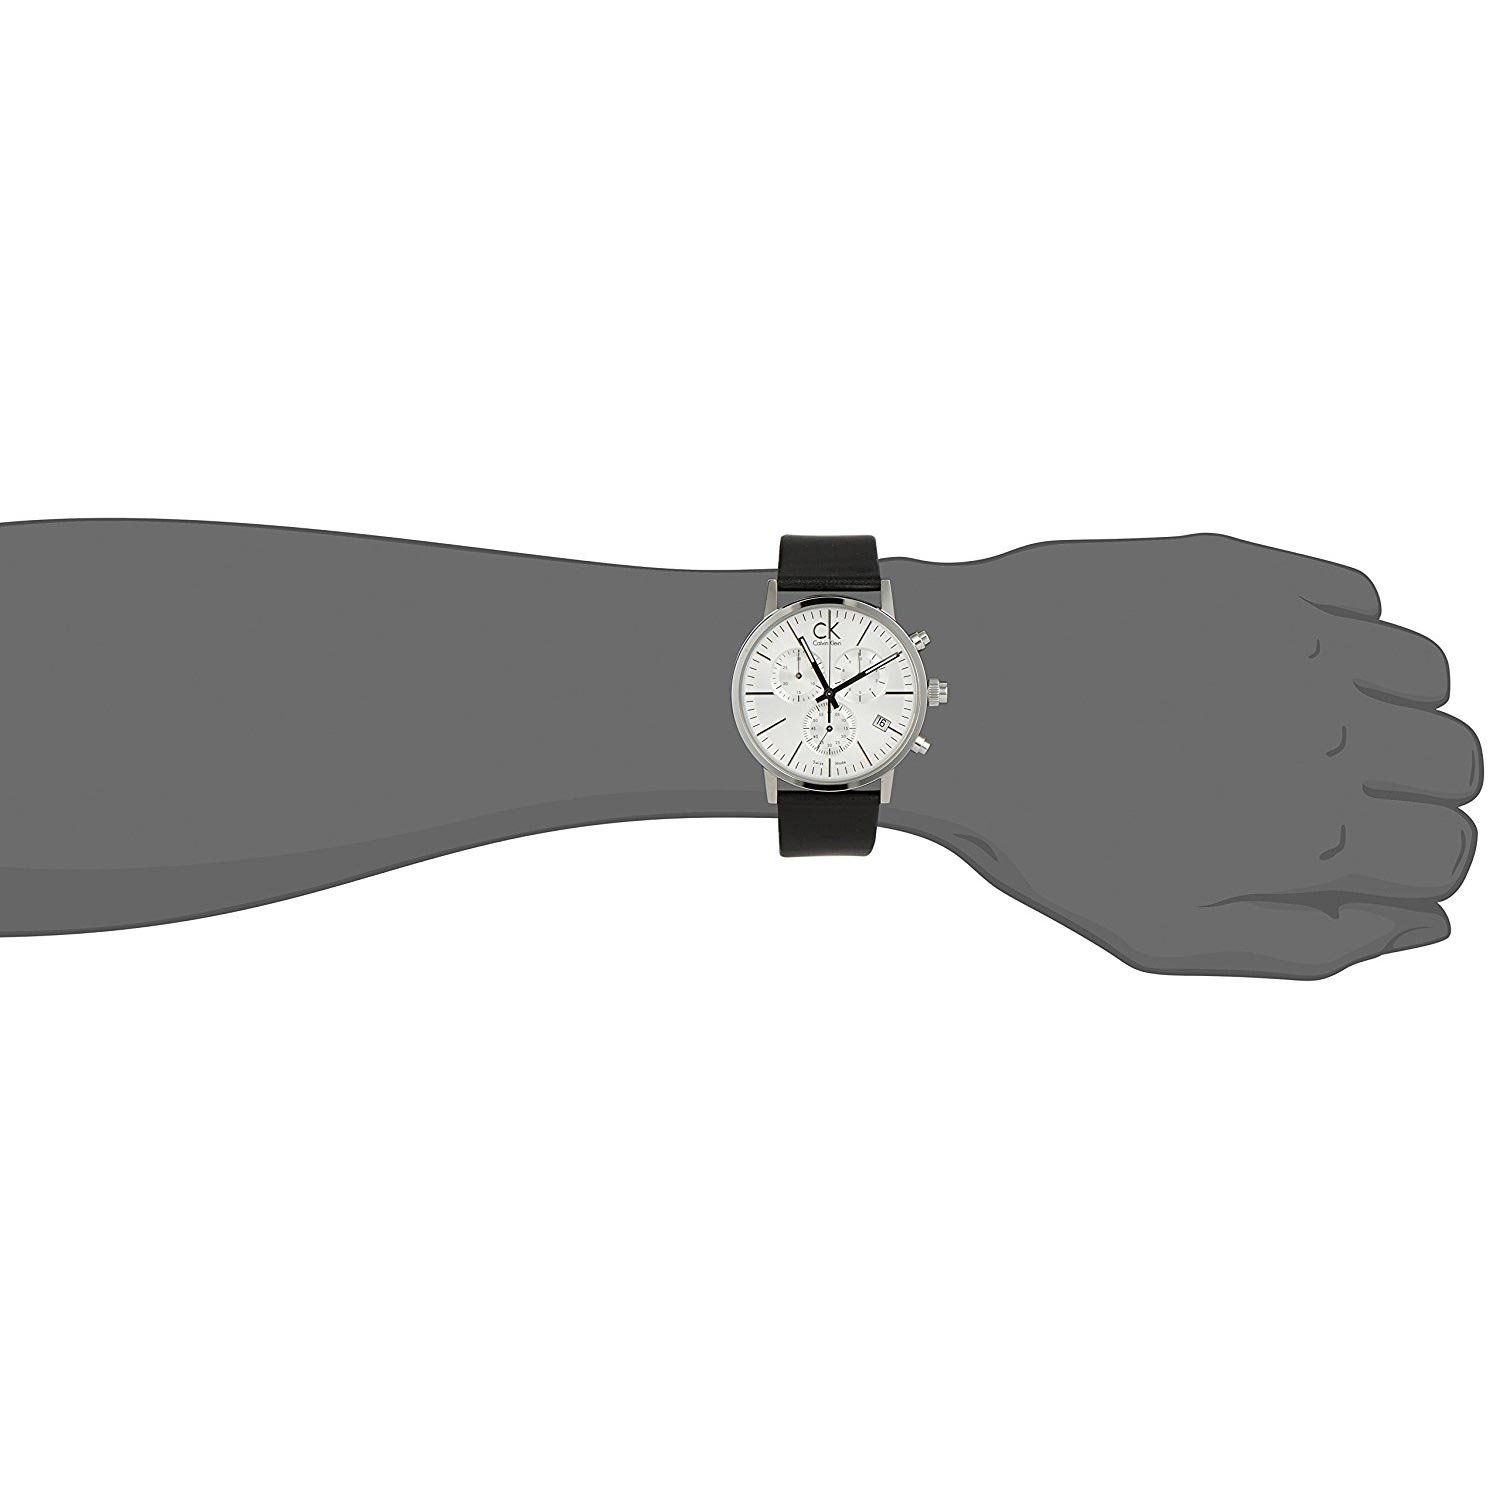 Herrenuhren silber - die besten silbernen Armbanduhren für Männer